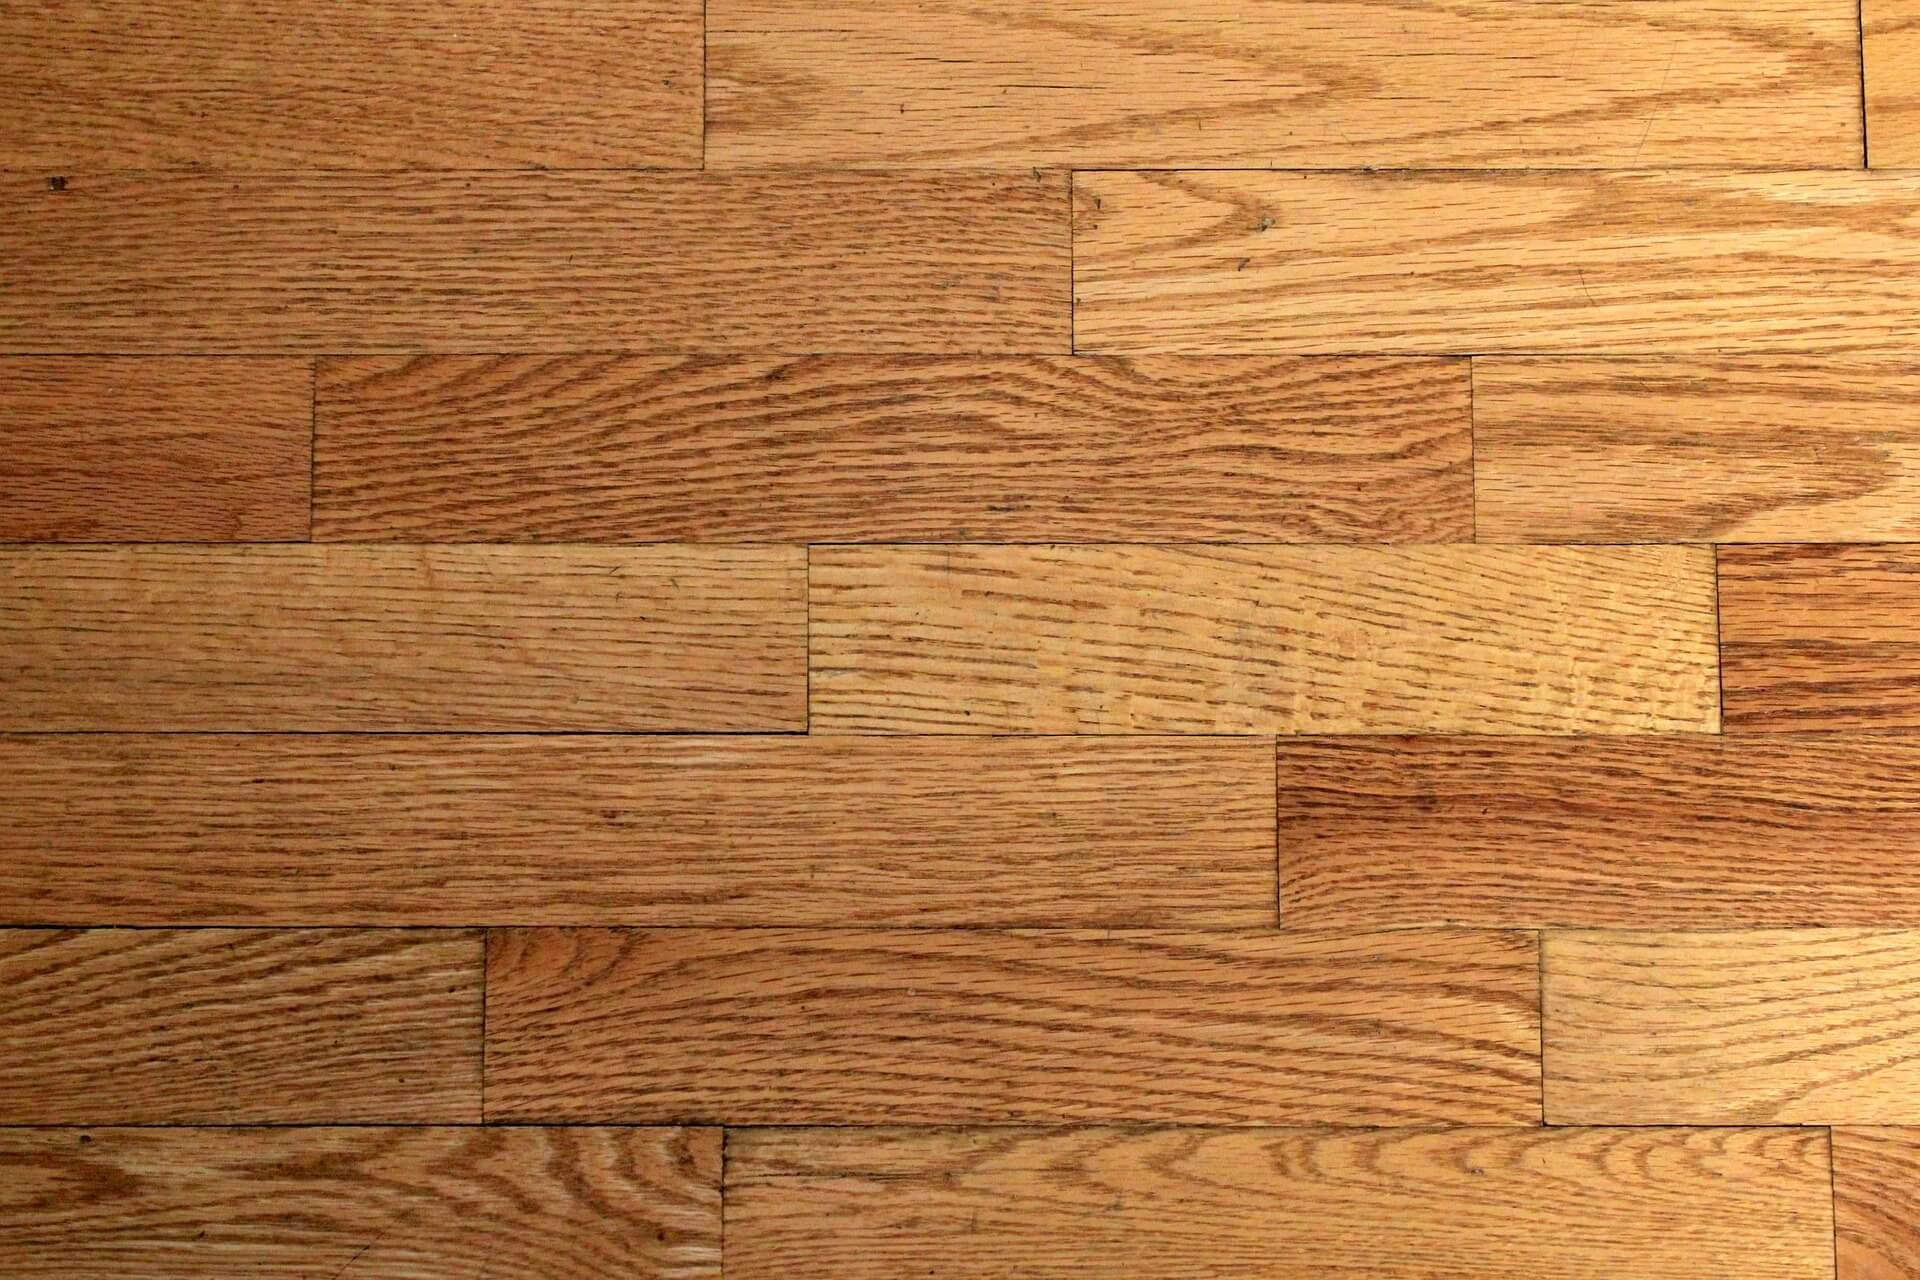 sagging wood floor